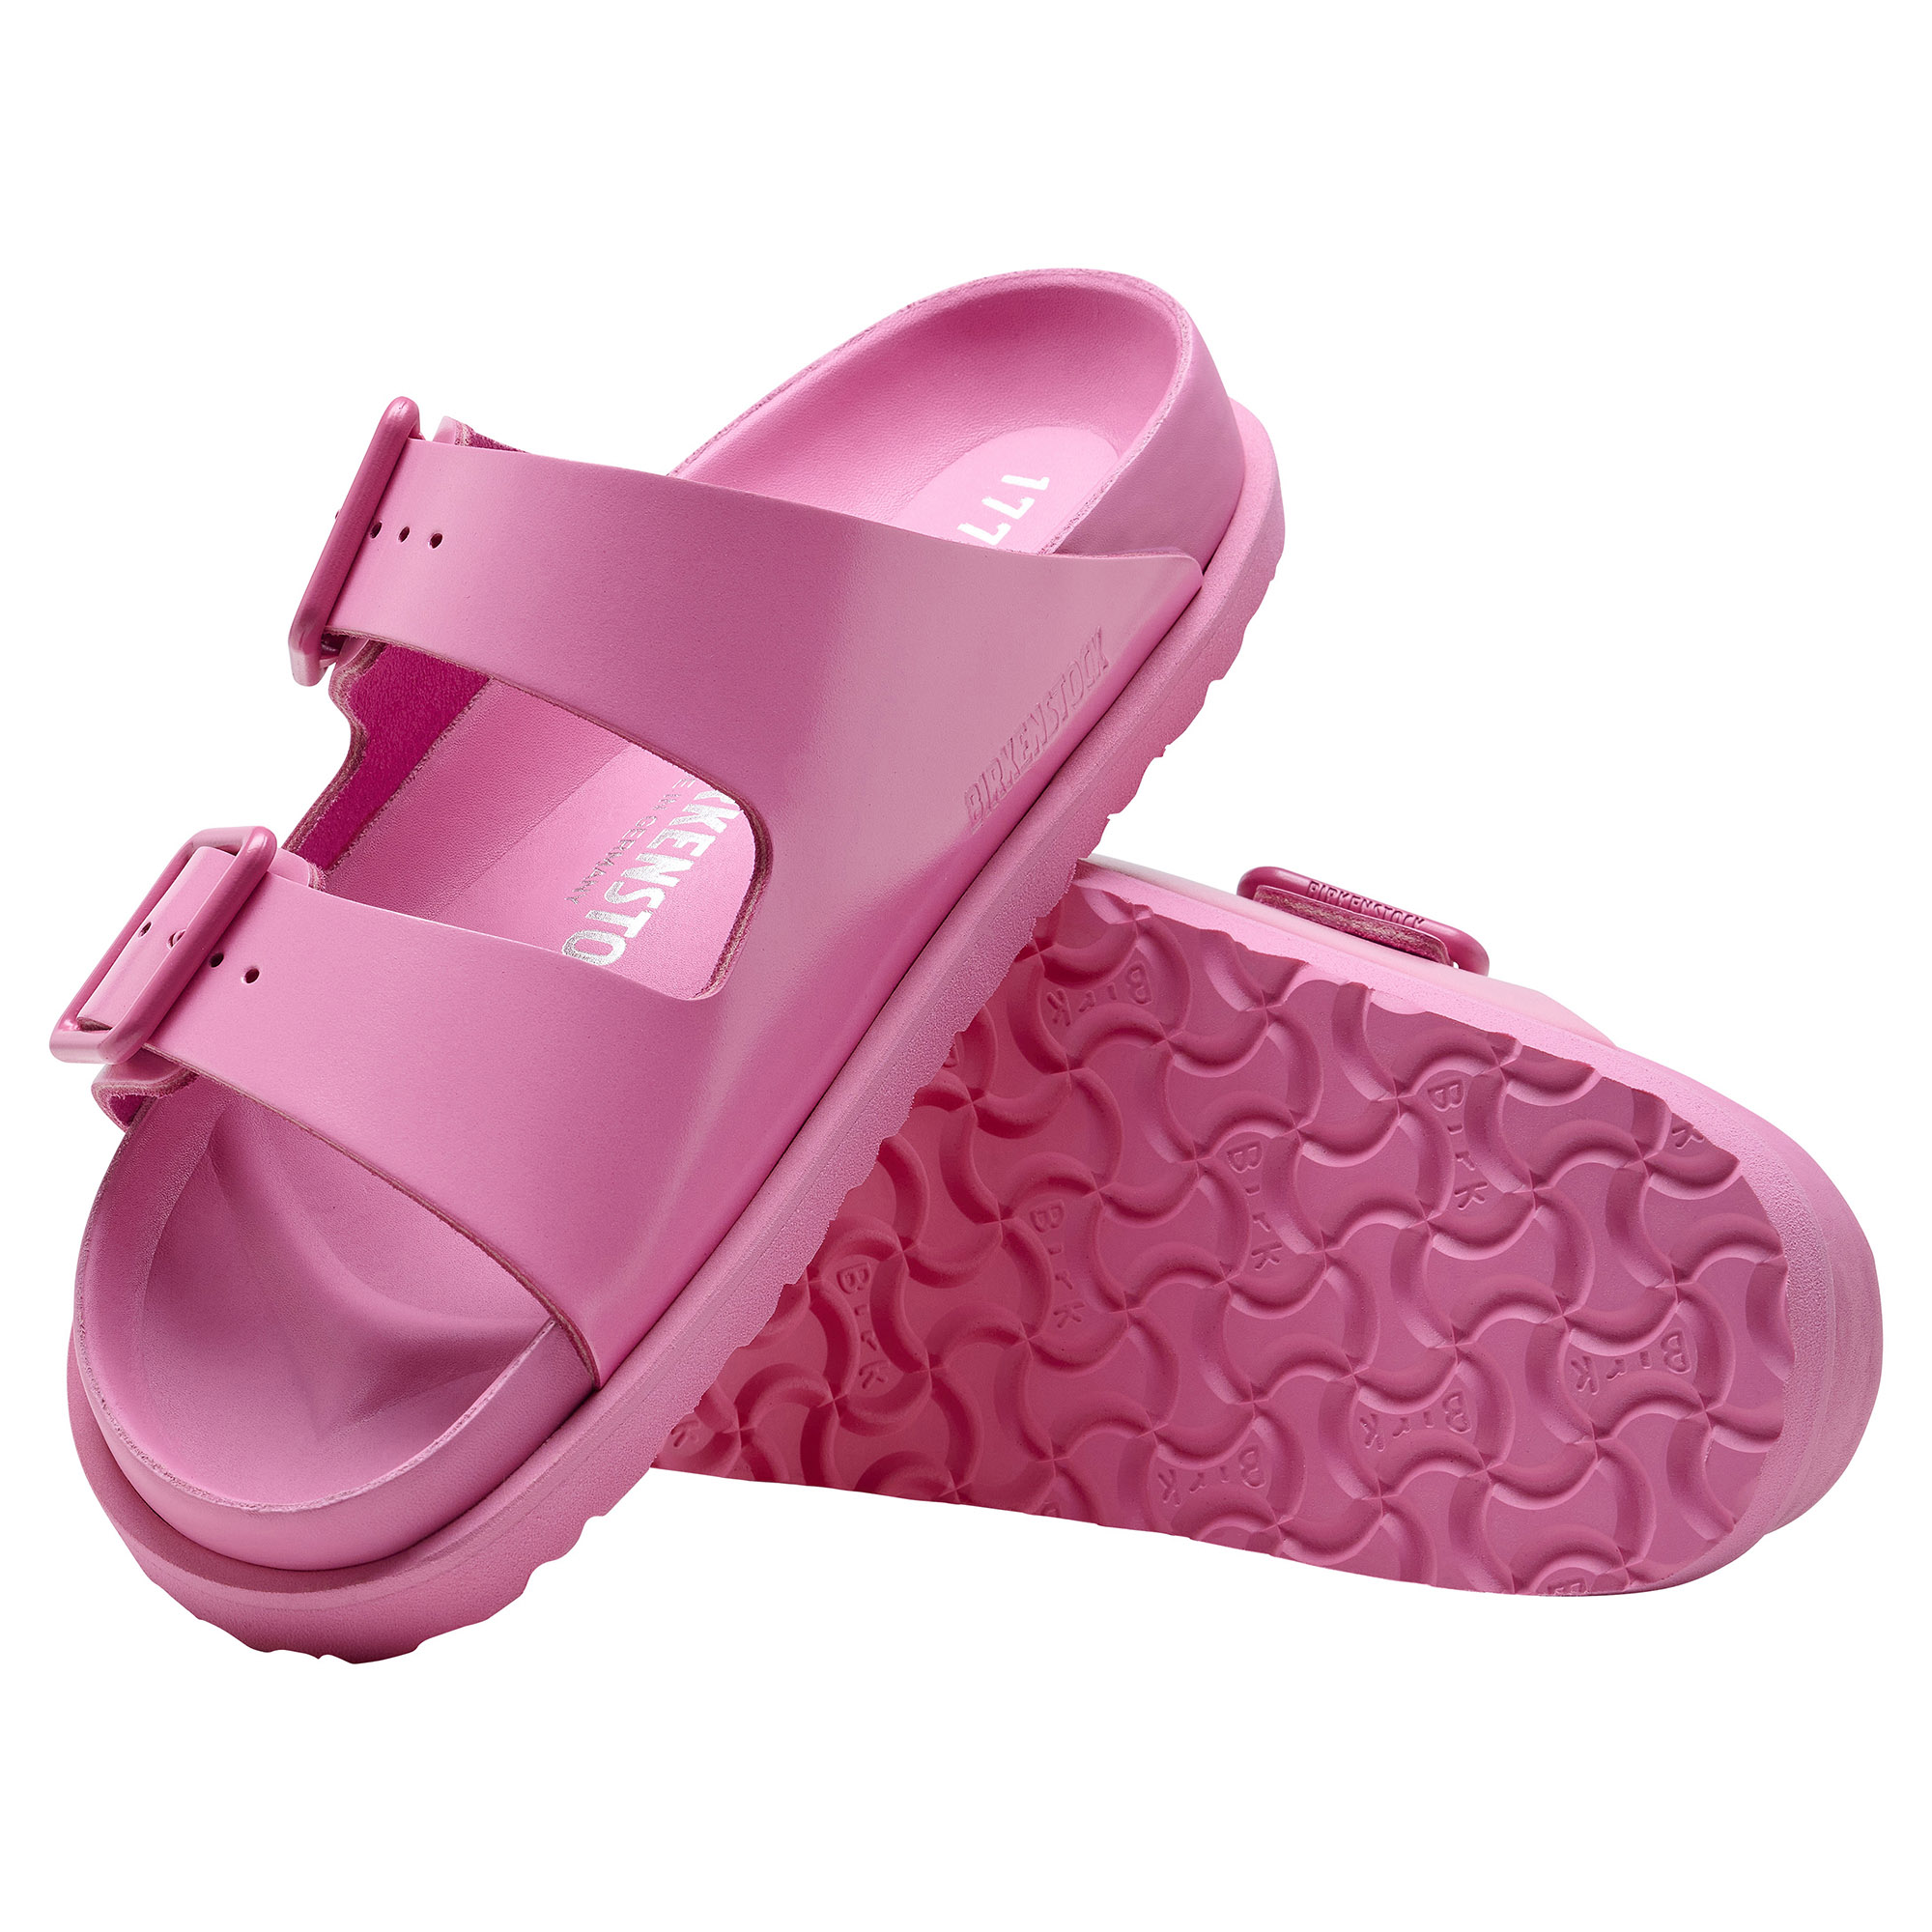 Birkenstock 1774 1774 III Arizona sandals for Women - Pink in UAE